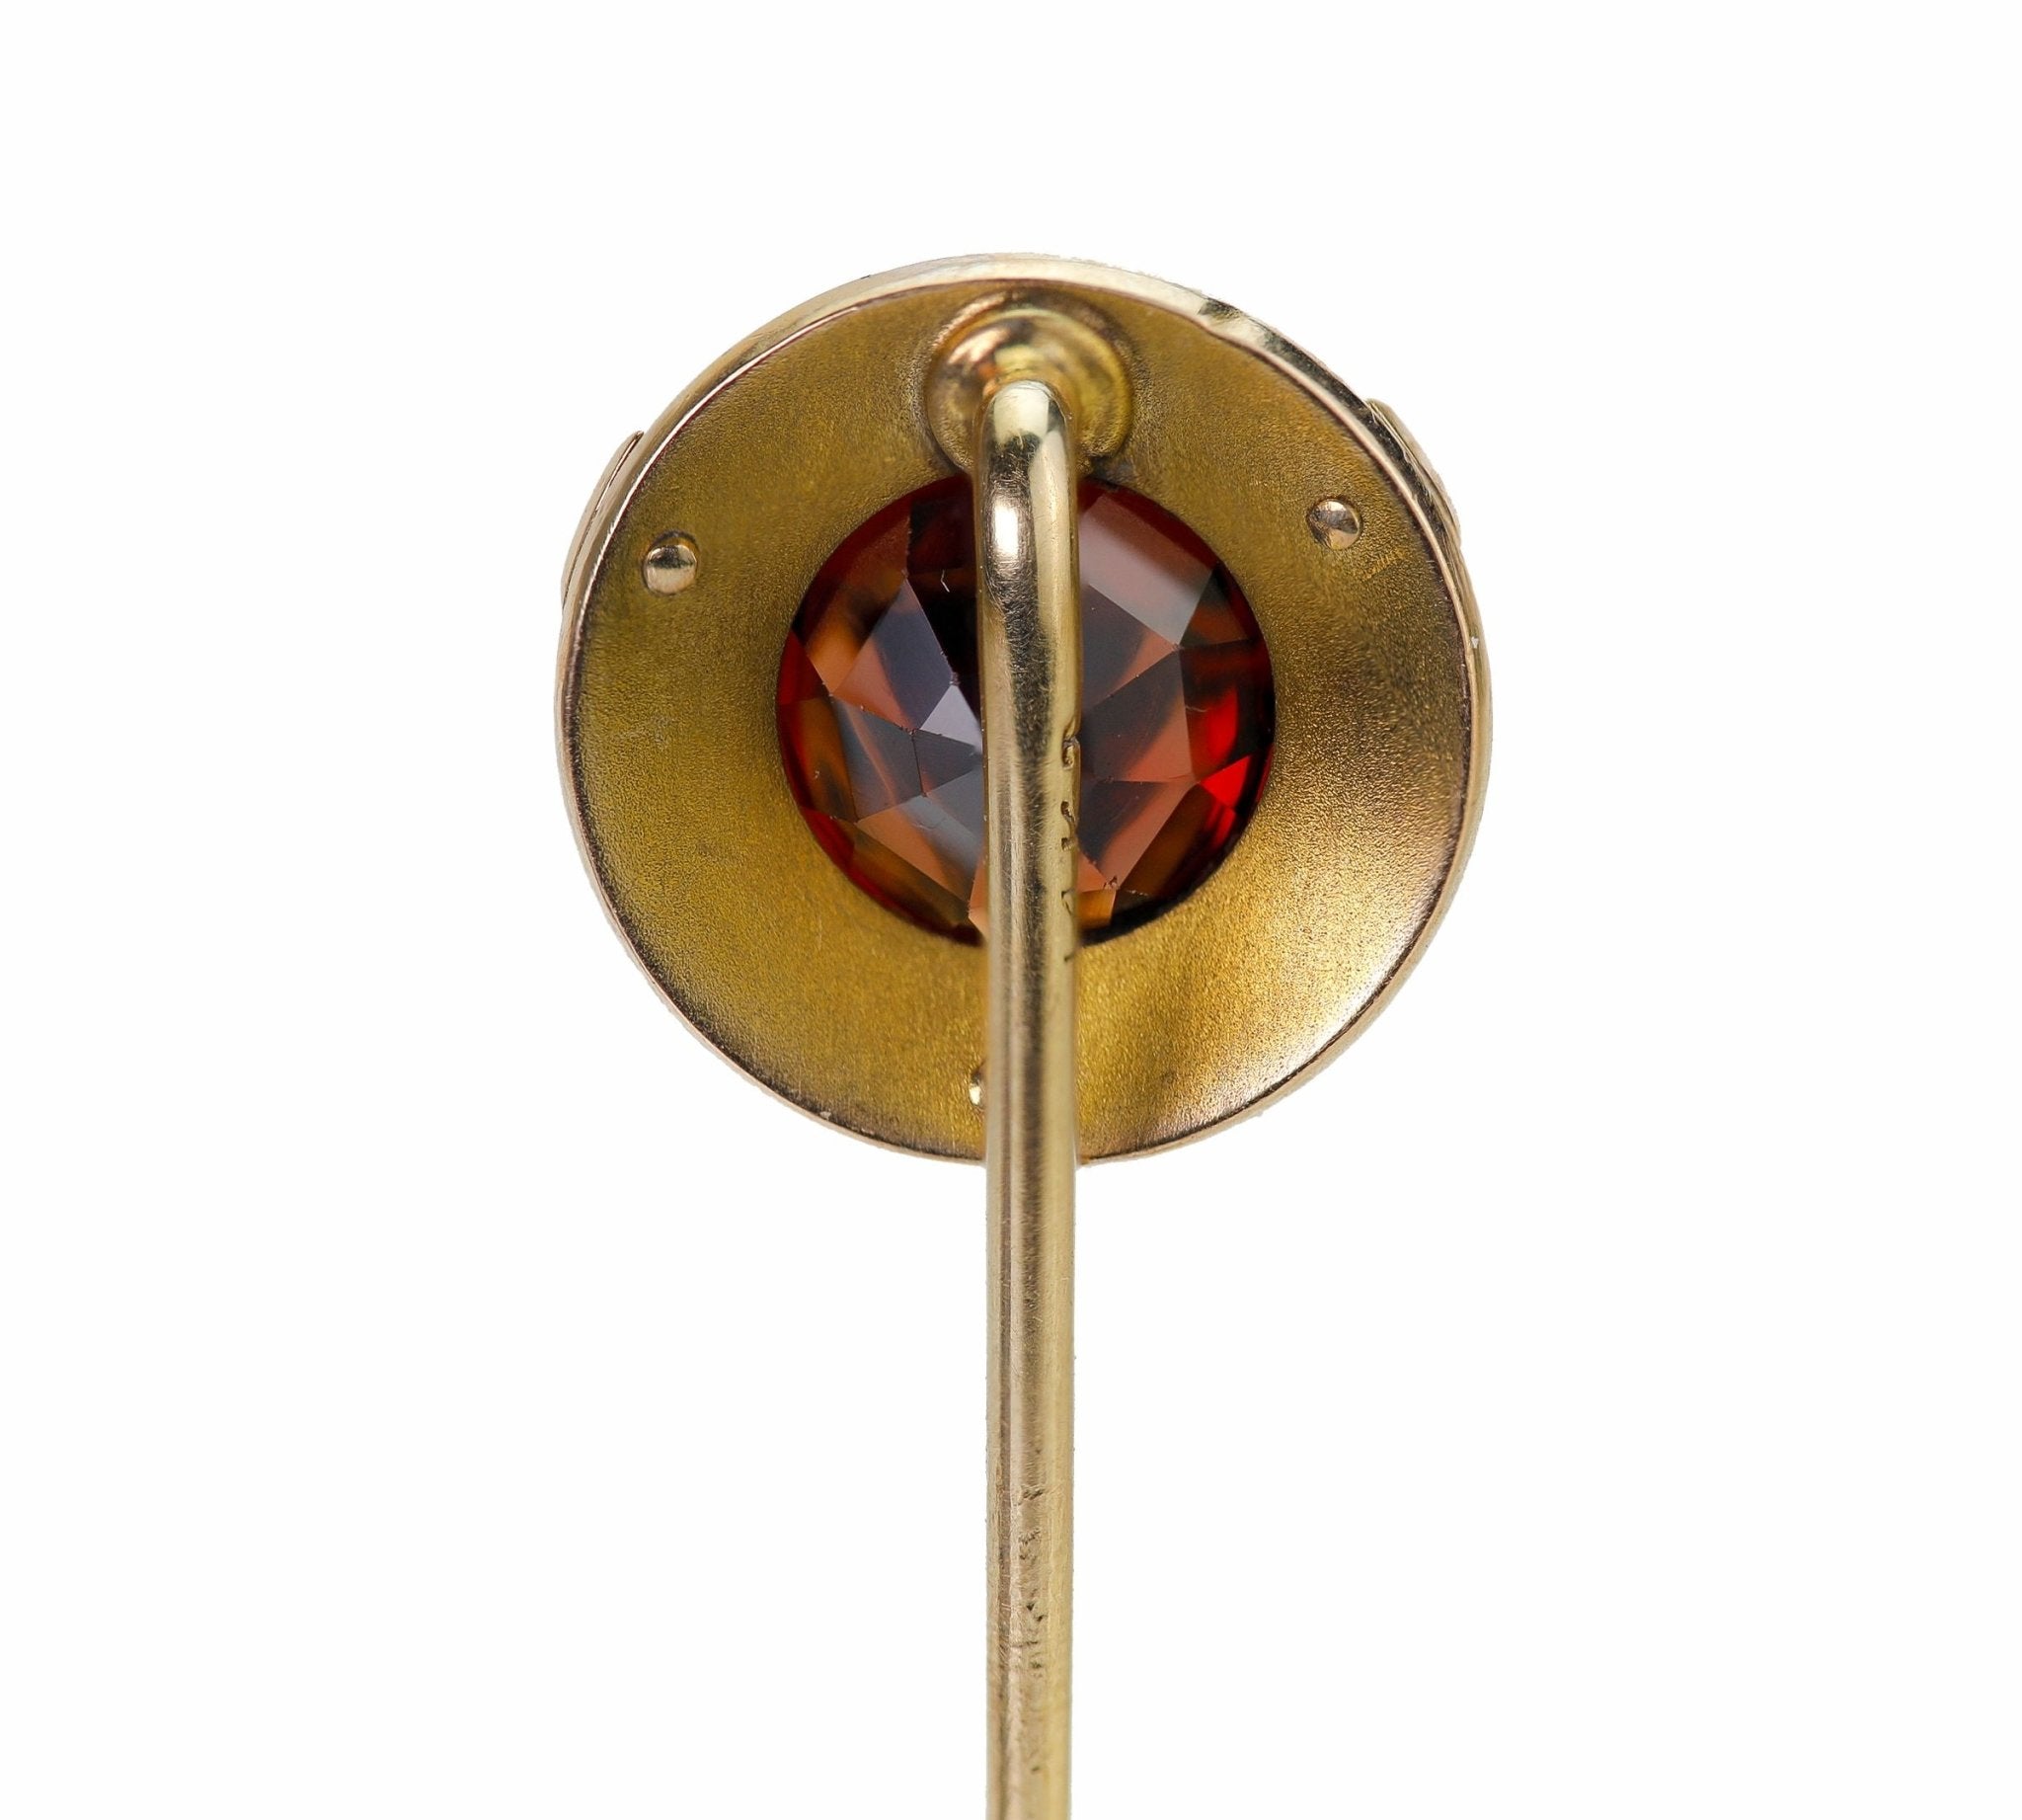 Antique Gold Garnet Stick Pin